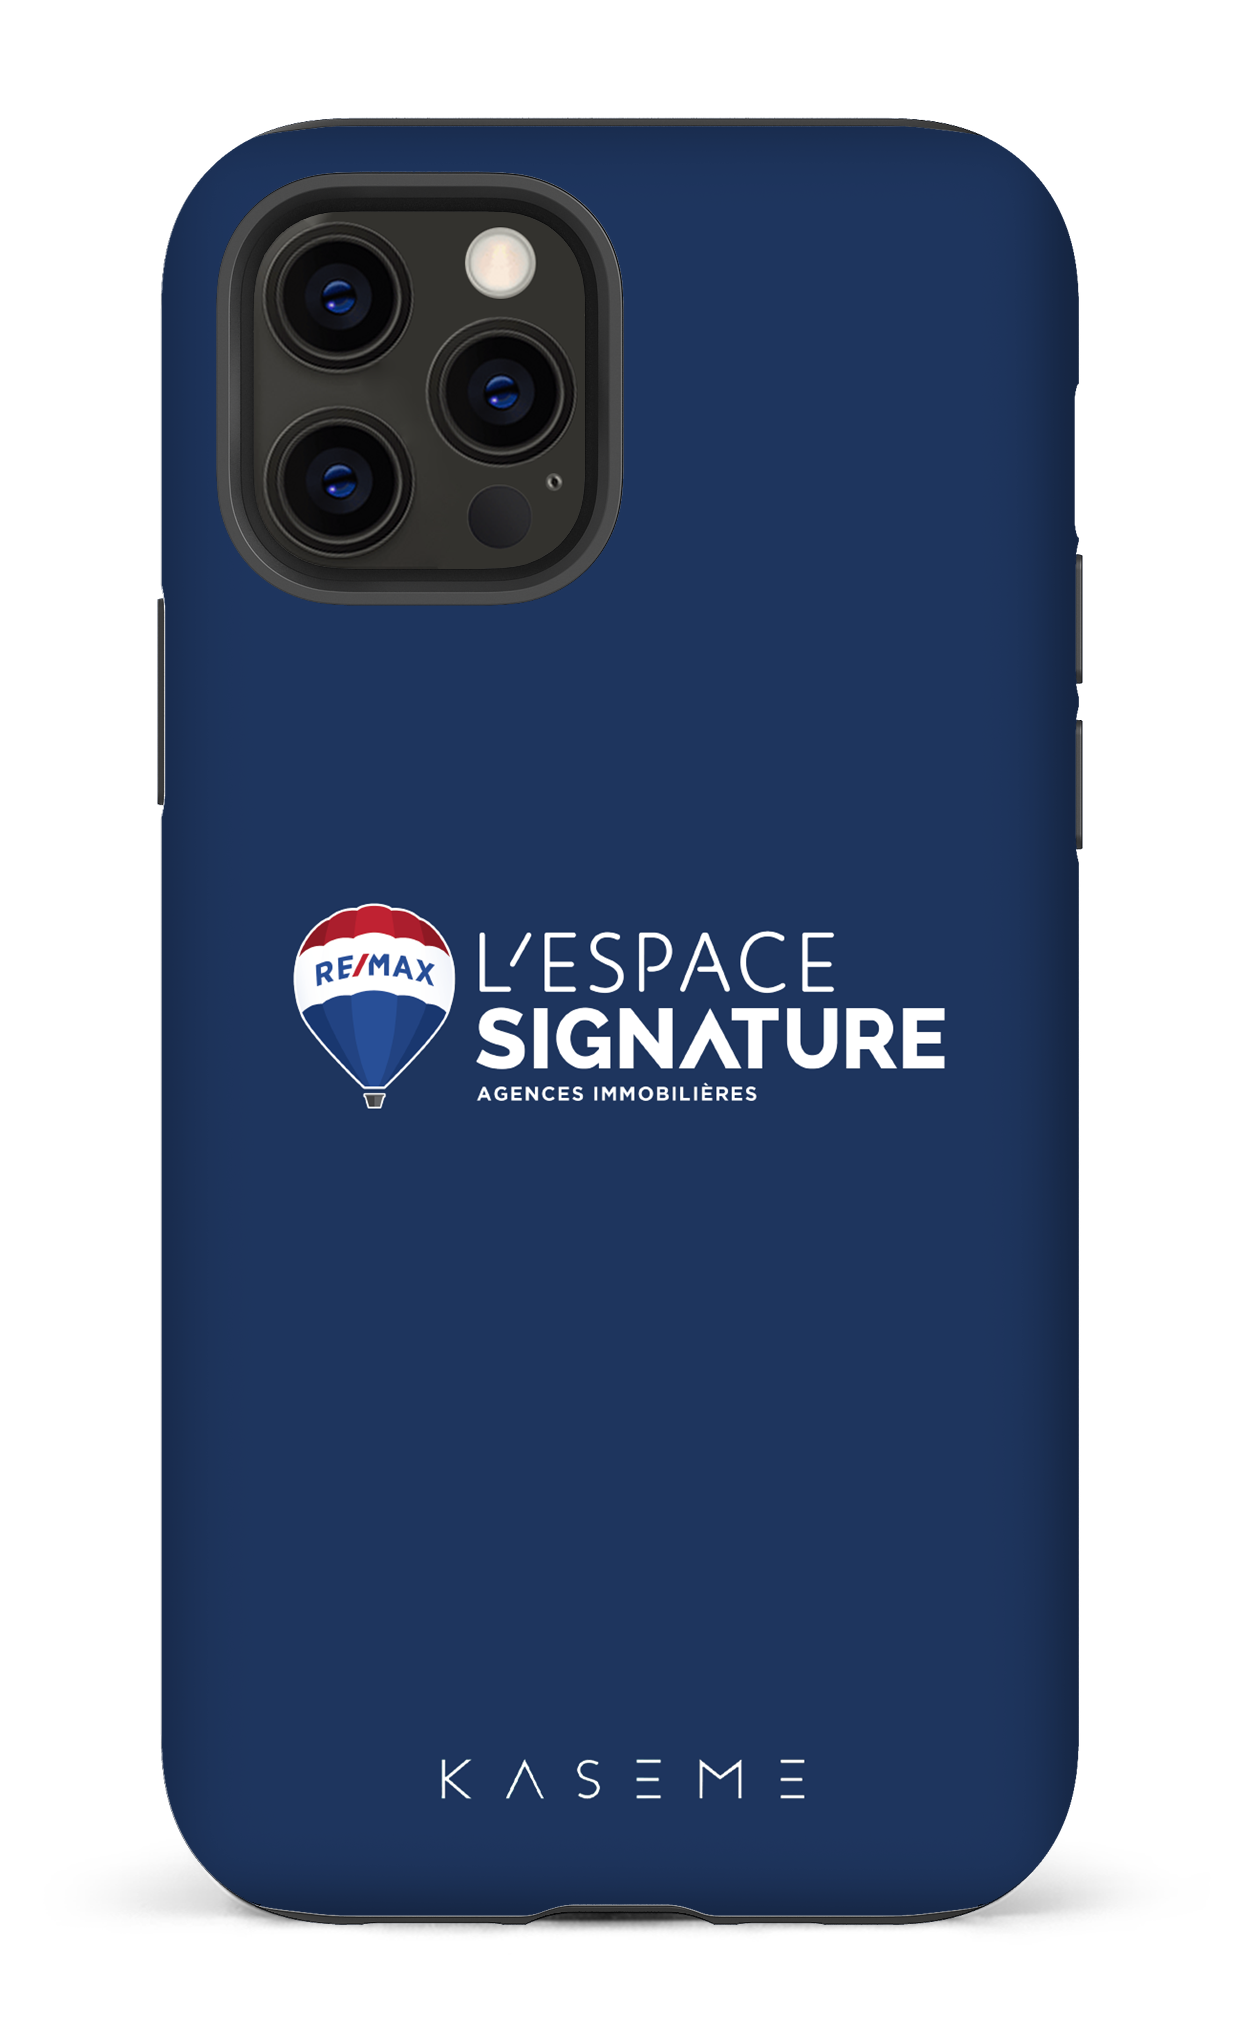 Remax Signature L'espace Bleu - iPhone 12 Pro